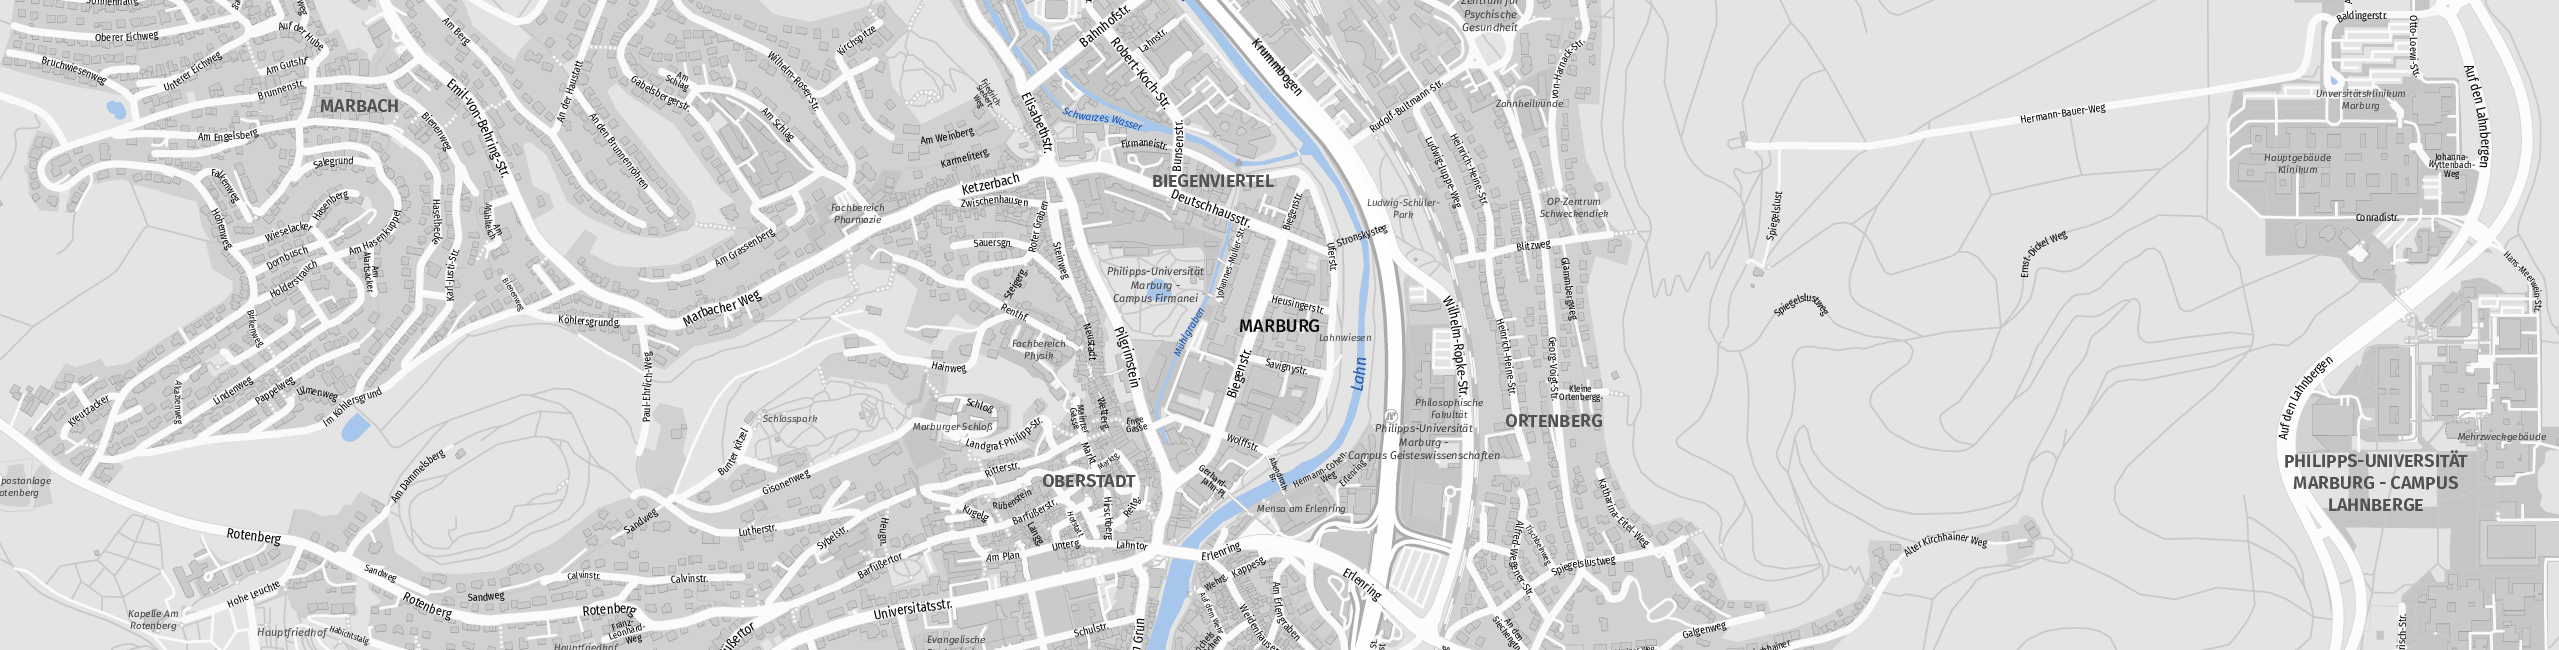 Stadtplan Marburg zum Downloaden.